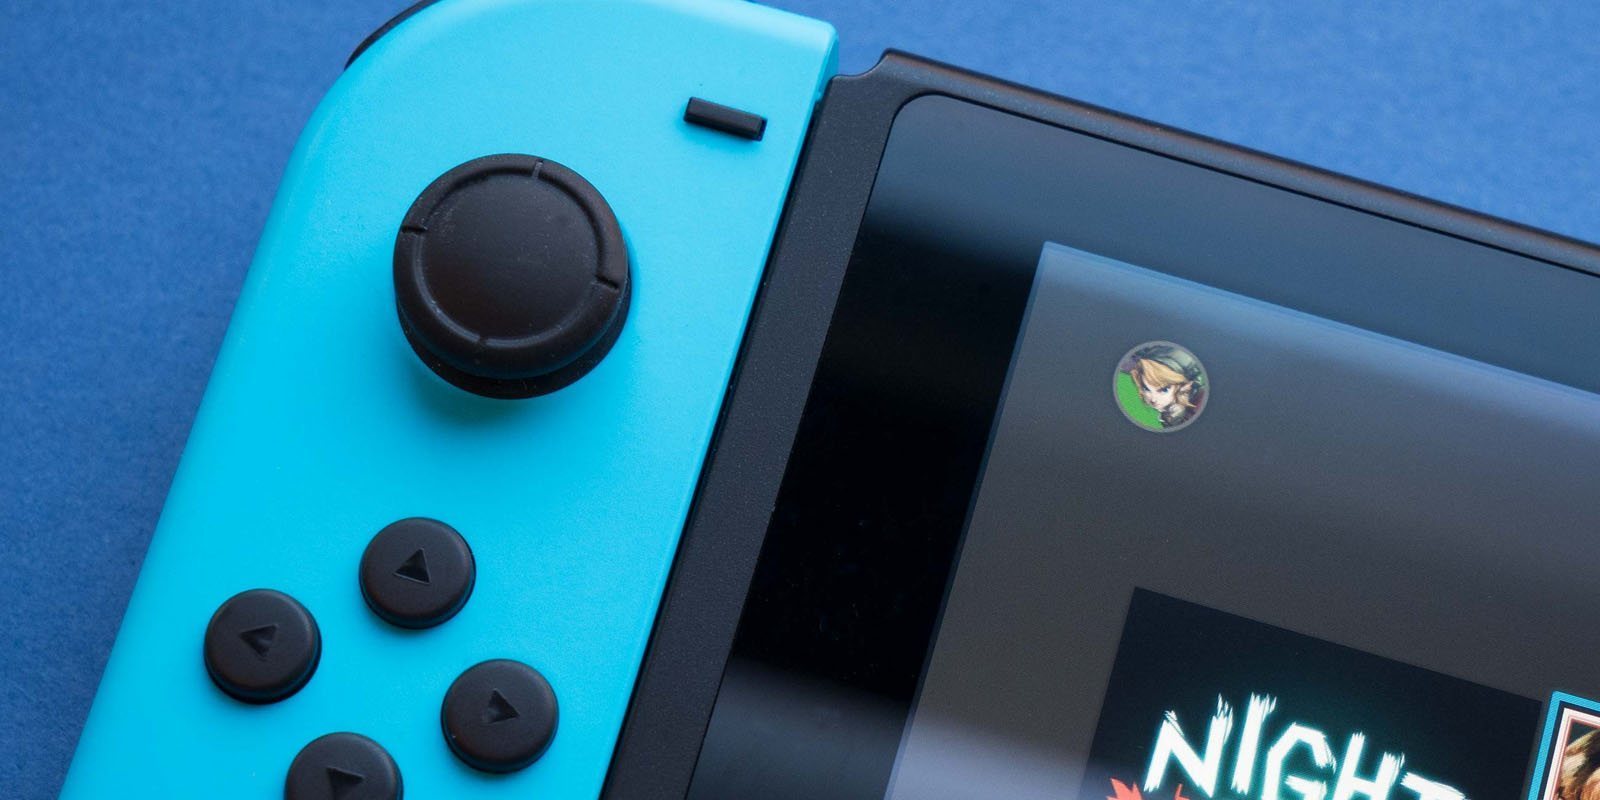 Nintendo tendría 11 juegos para Switch todavía sin anunciar